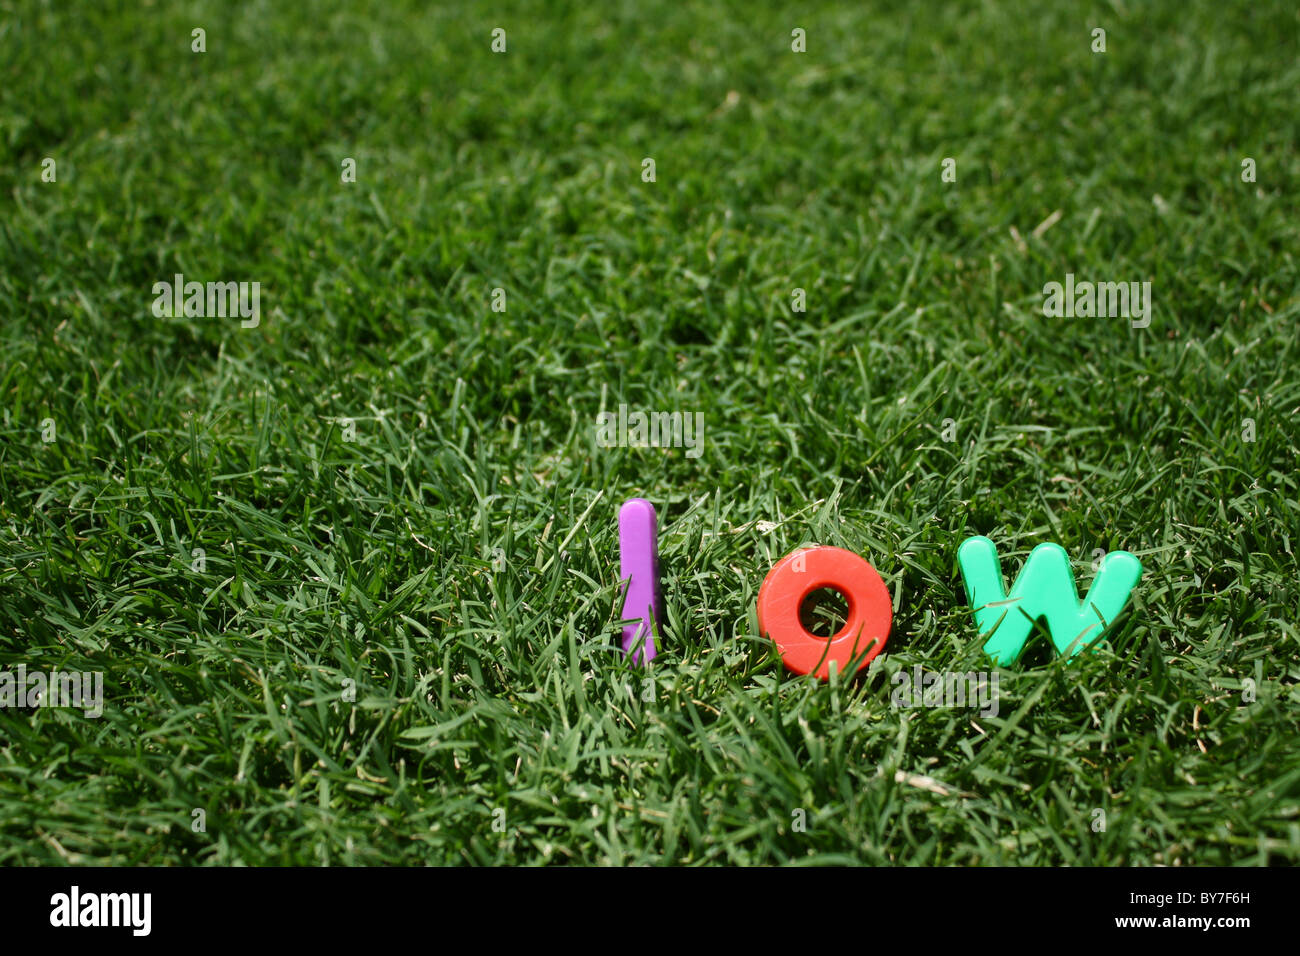 La palabra 'bajo' escrito en letras de plástico multicolor, sobre la hierba verde Foto de stock